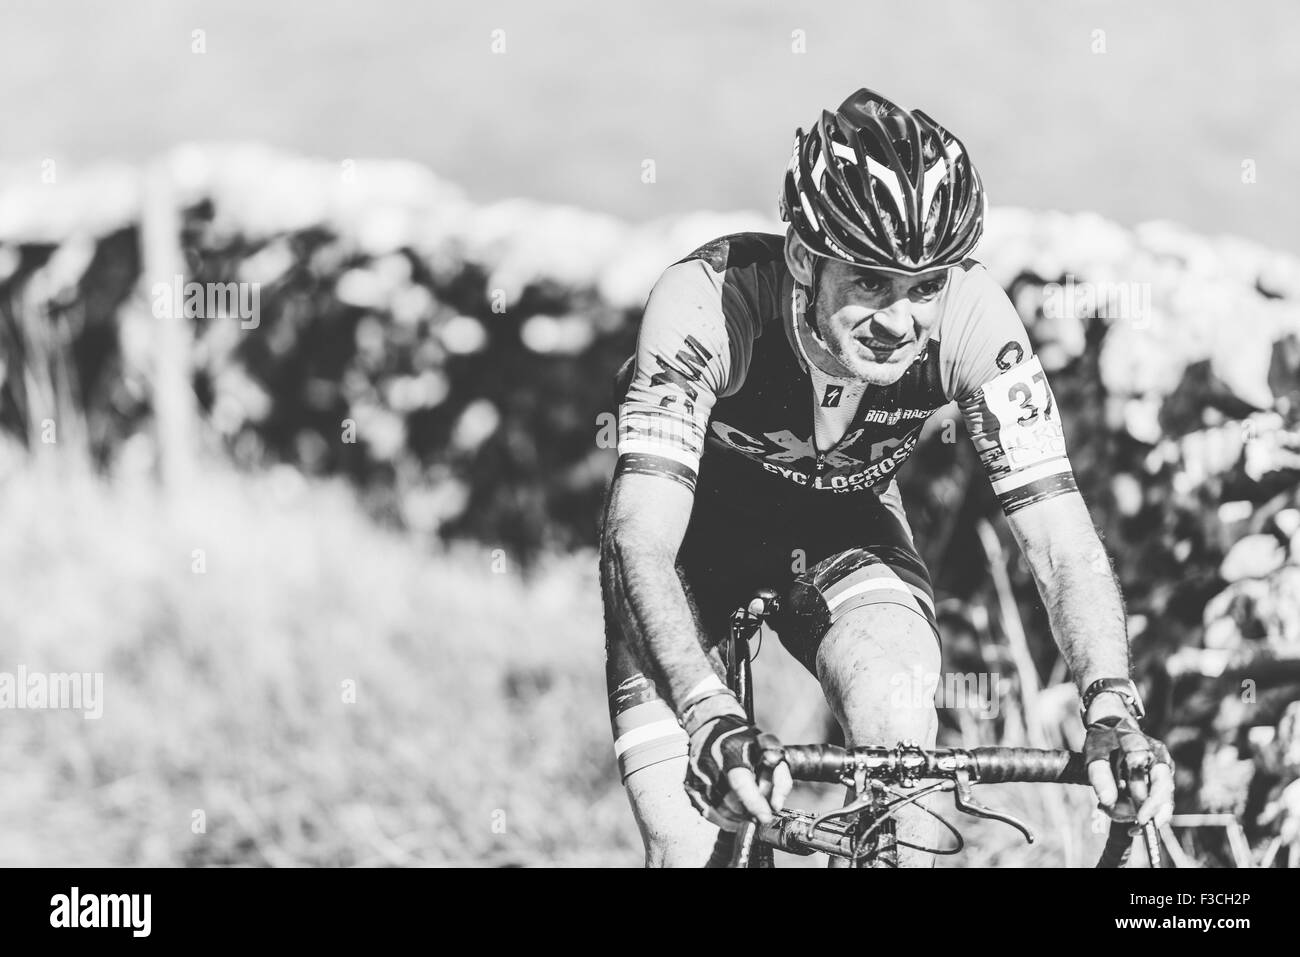 2015 - 3 Peaks Cyclocross Race - Yorkshire - Ingleborough, Whernside and Pen-y-ghent - Winner Paul Oldham - Jules Toone Stock Photo